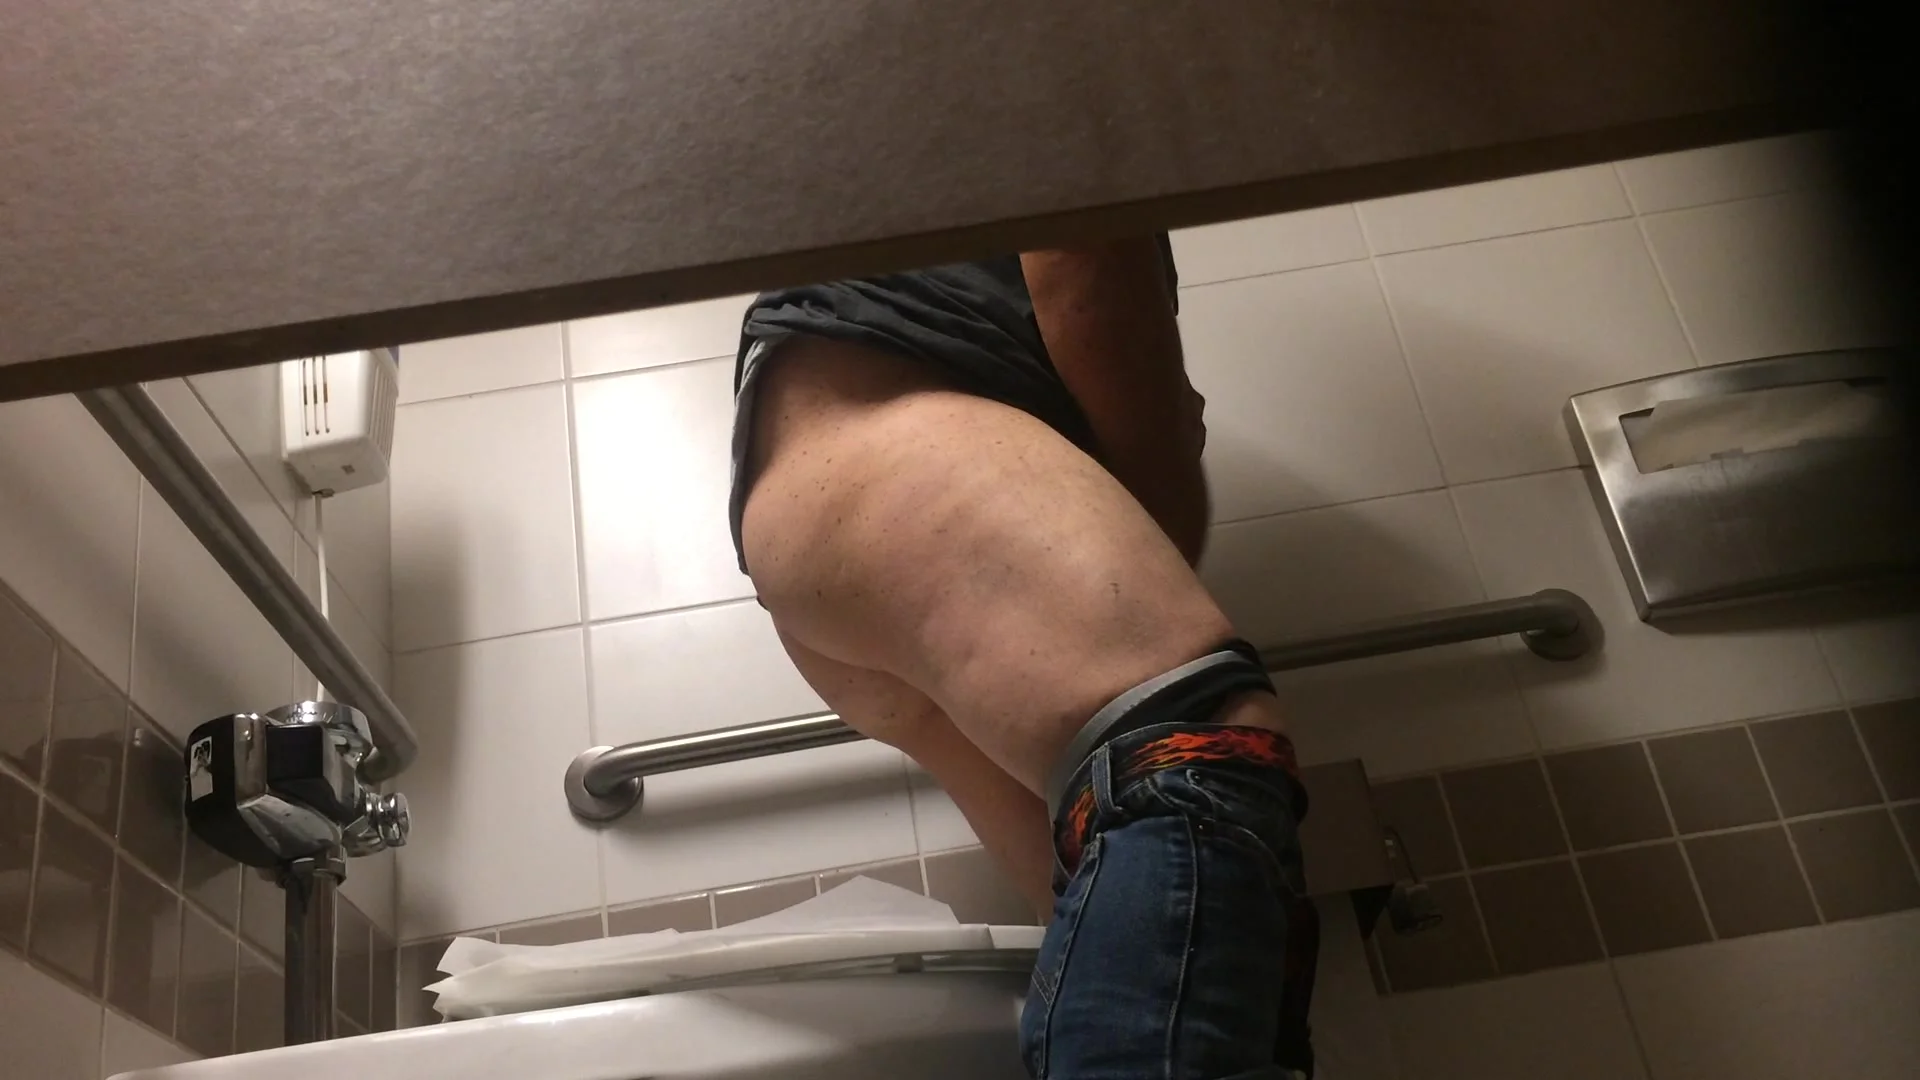 Boys On A Toilet Spy